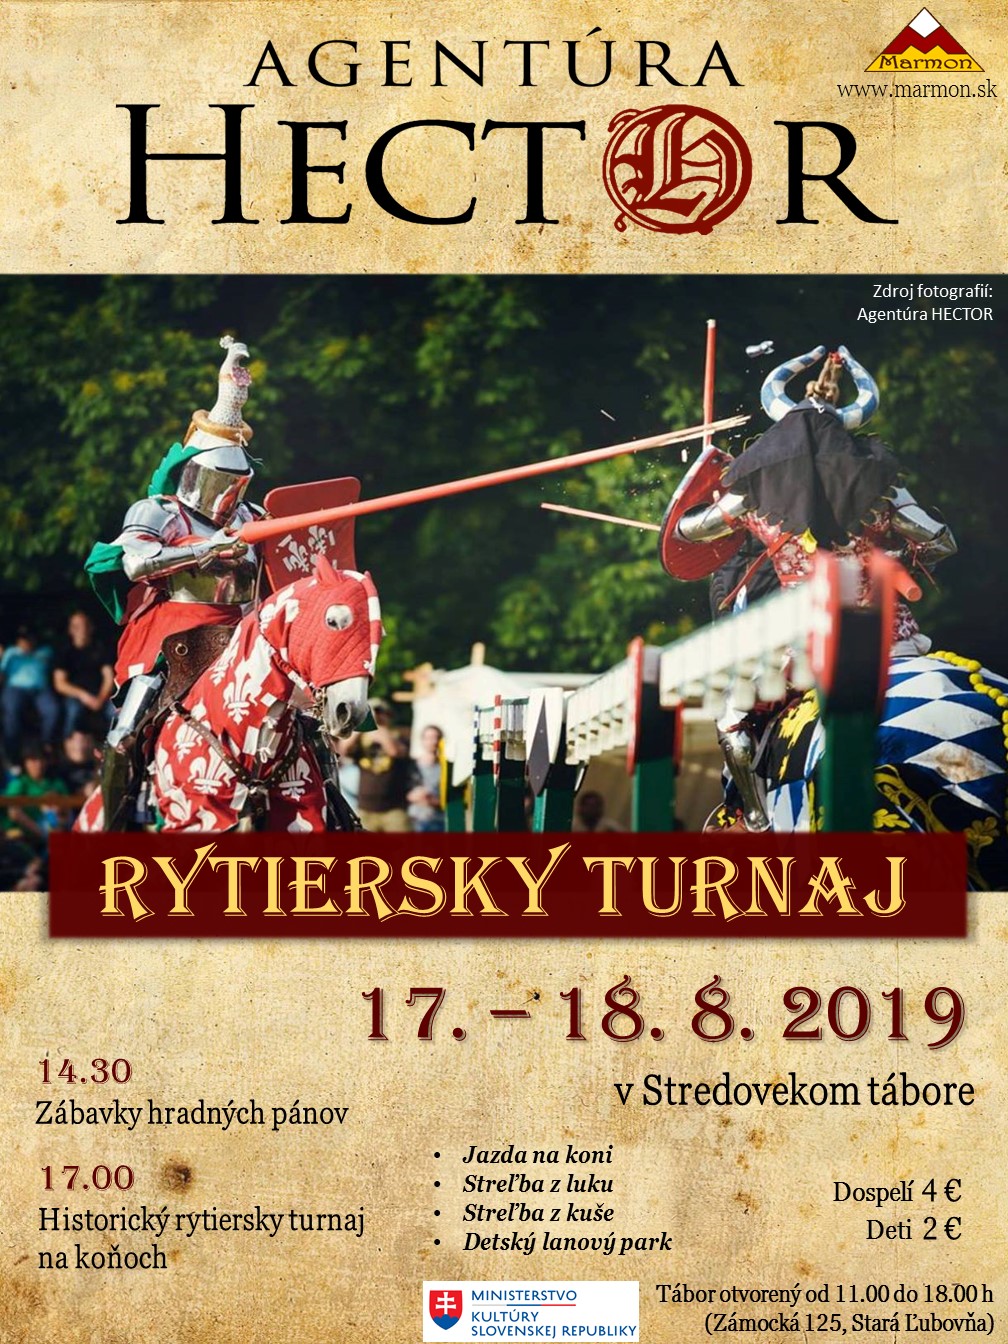 Rytiersky turnaj Hector 2019 Stará Ľubovňa